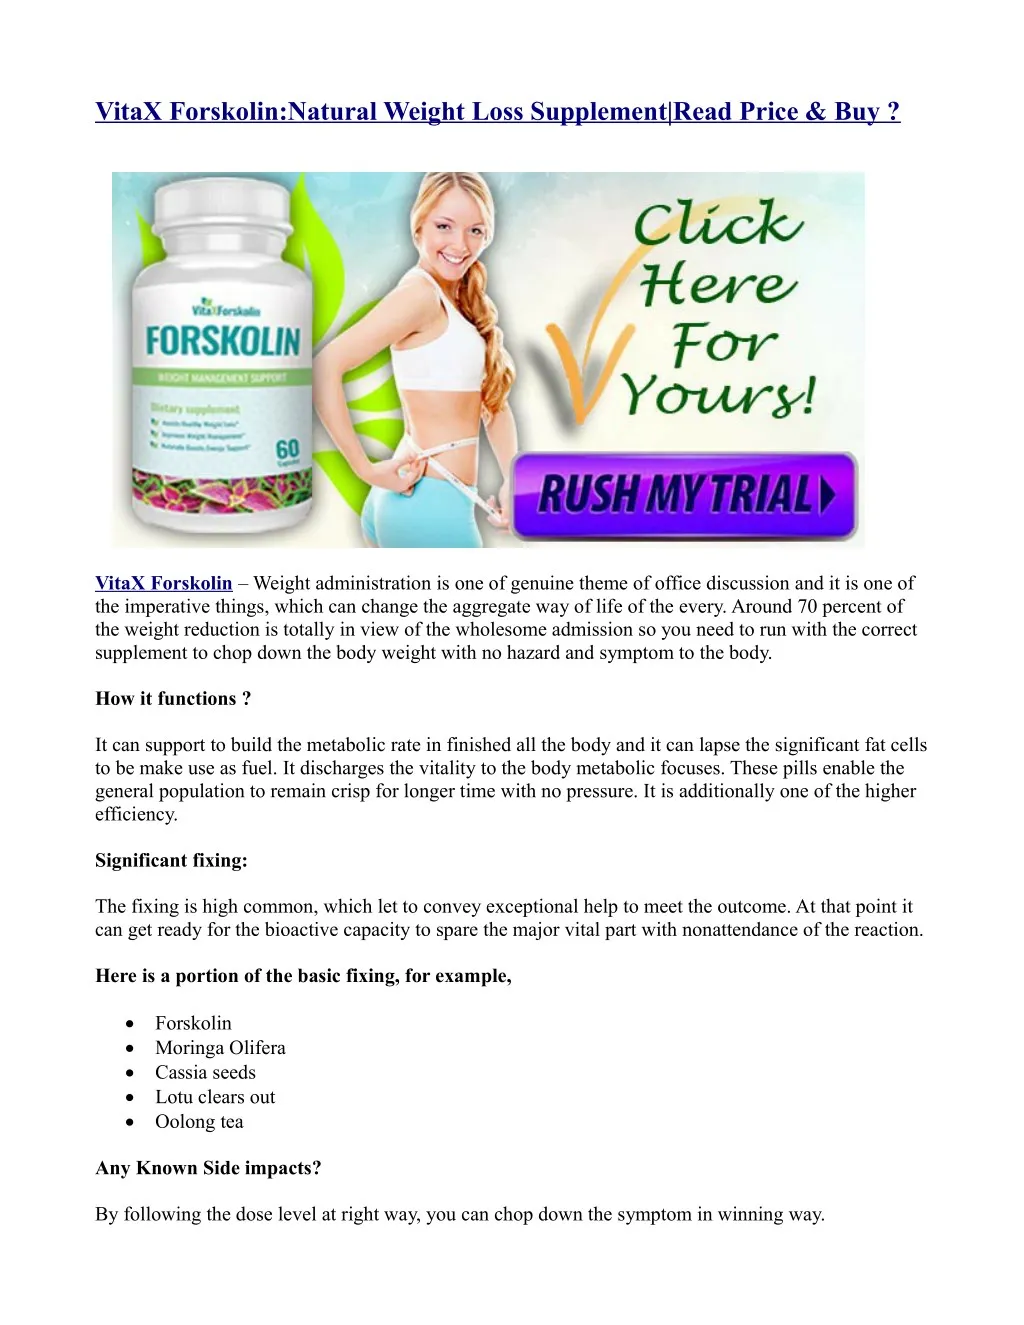 vitax forskolin natural weight loss supplement